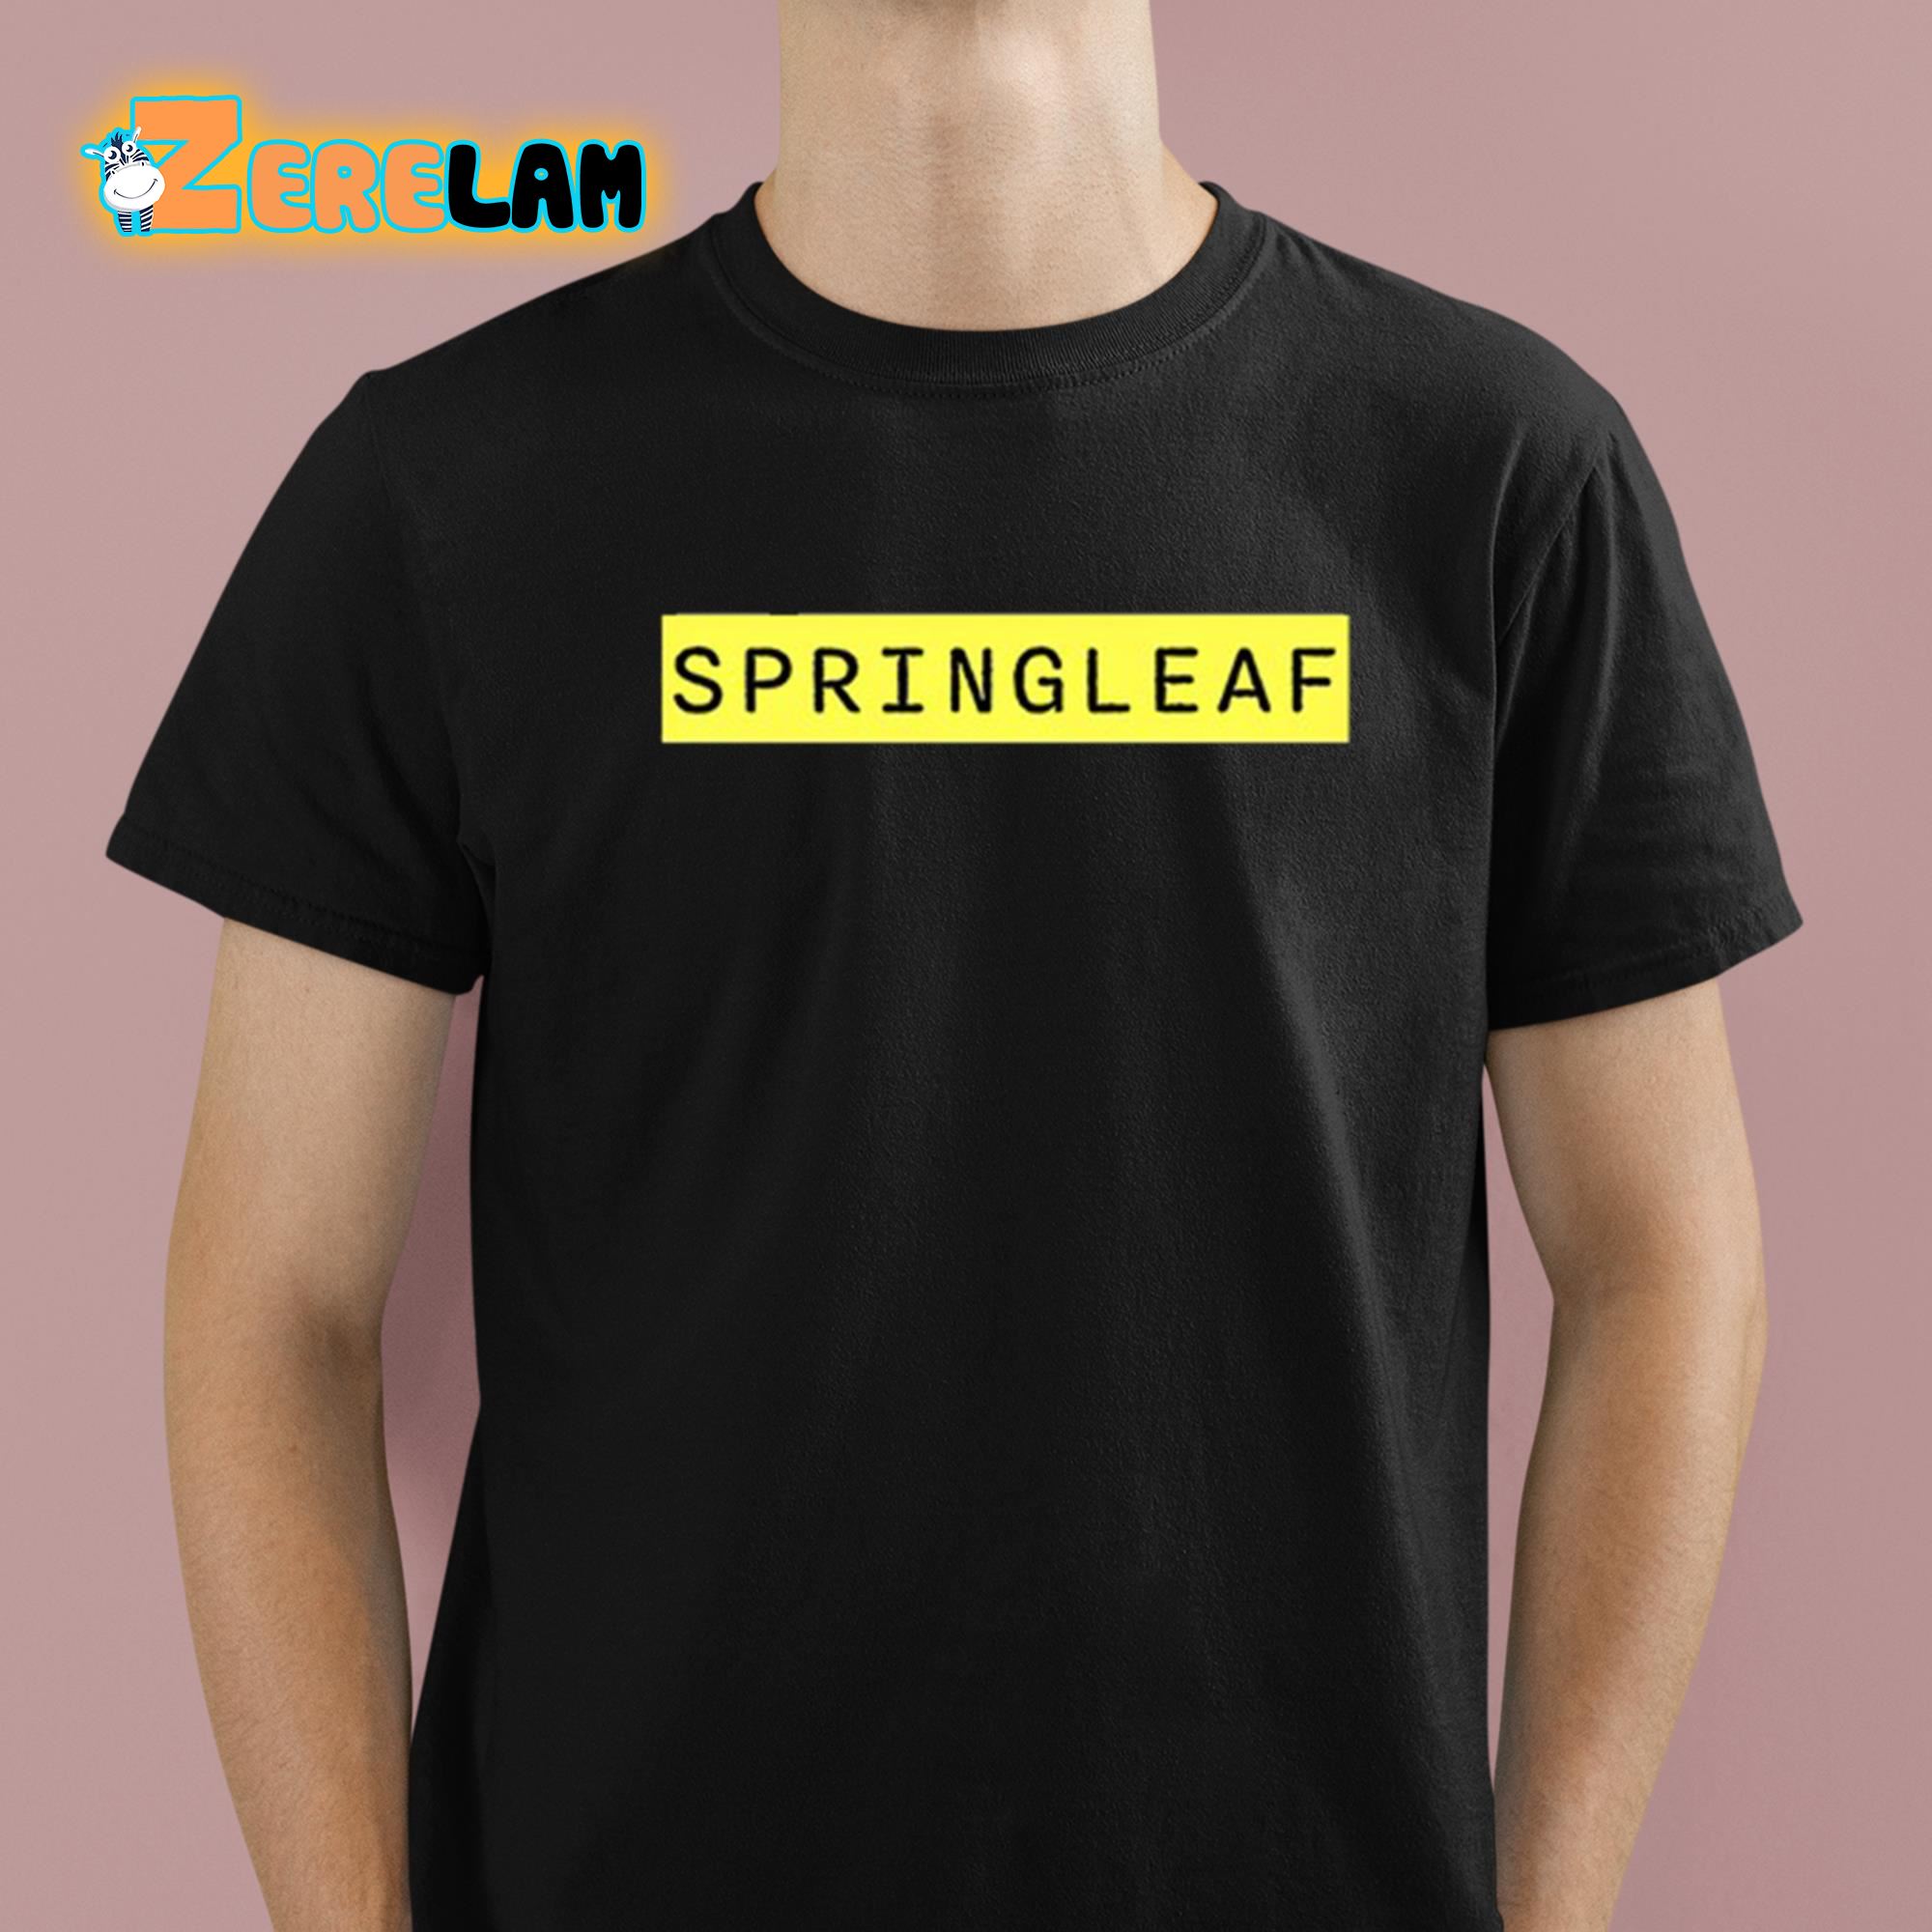 Springleaf Logo Shirt 1 1